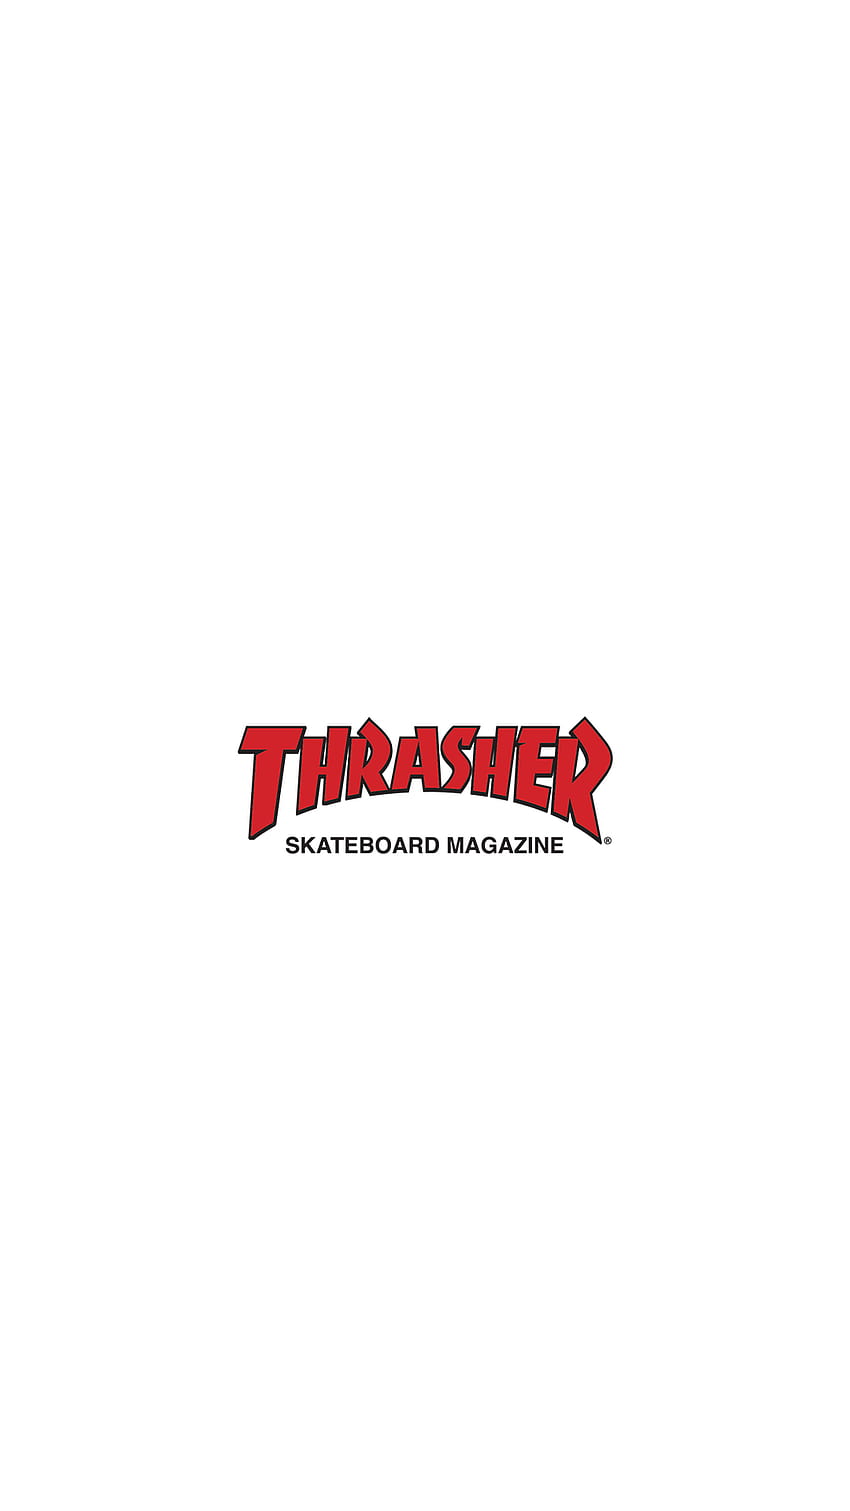 Thrasher Skateboard Magazine Fonte: Thrasher, skateboarding thrasher HD phone wallpaper